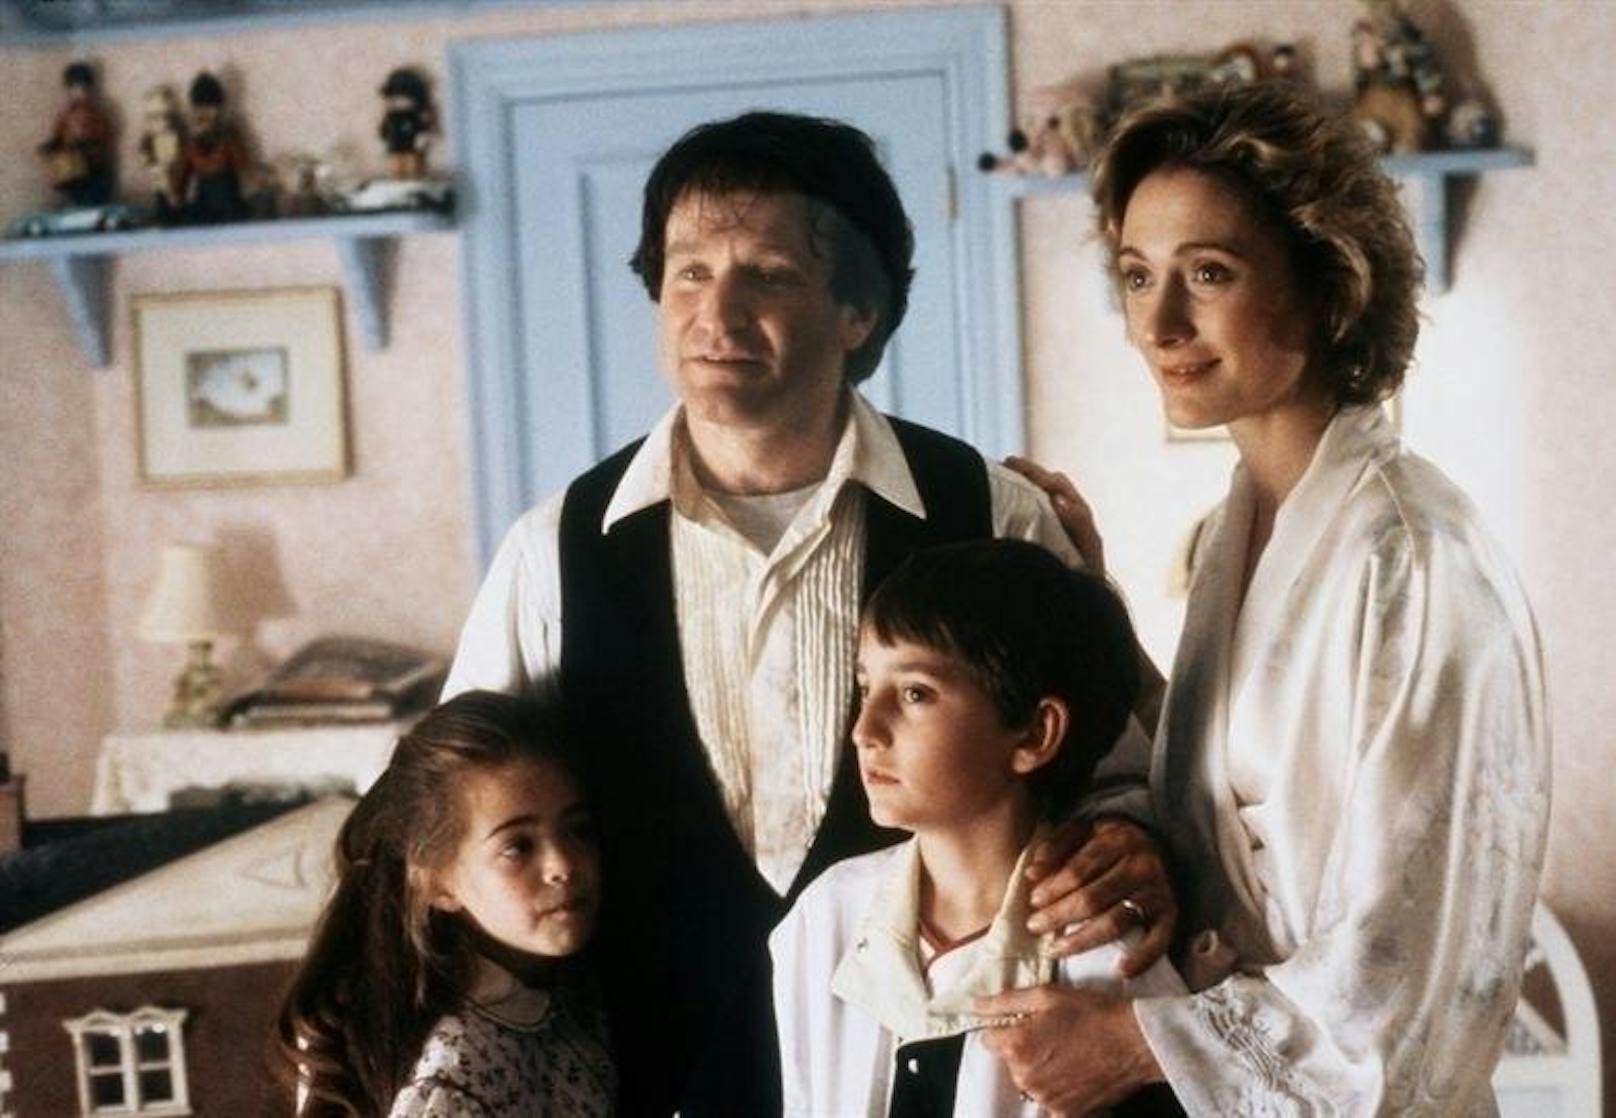 Robin Williams als unerschrockener Peter Banning in Steven Spielbergs "Hook" (1991)